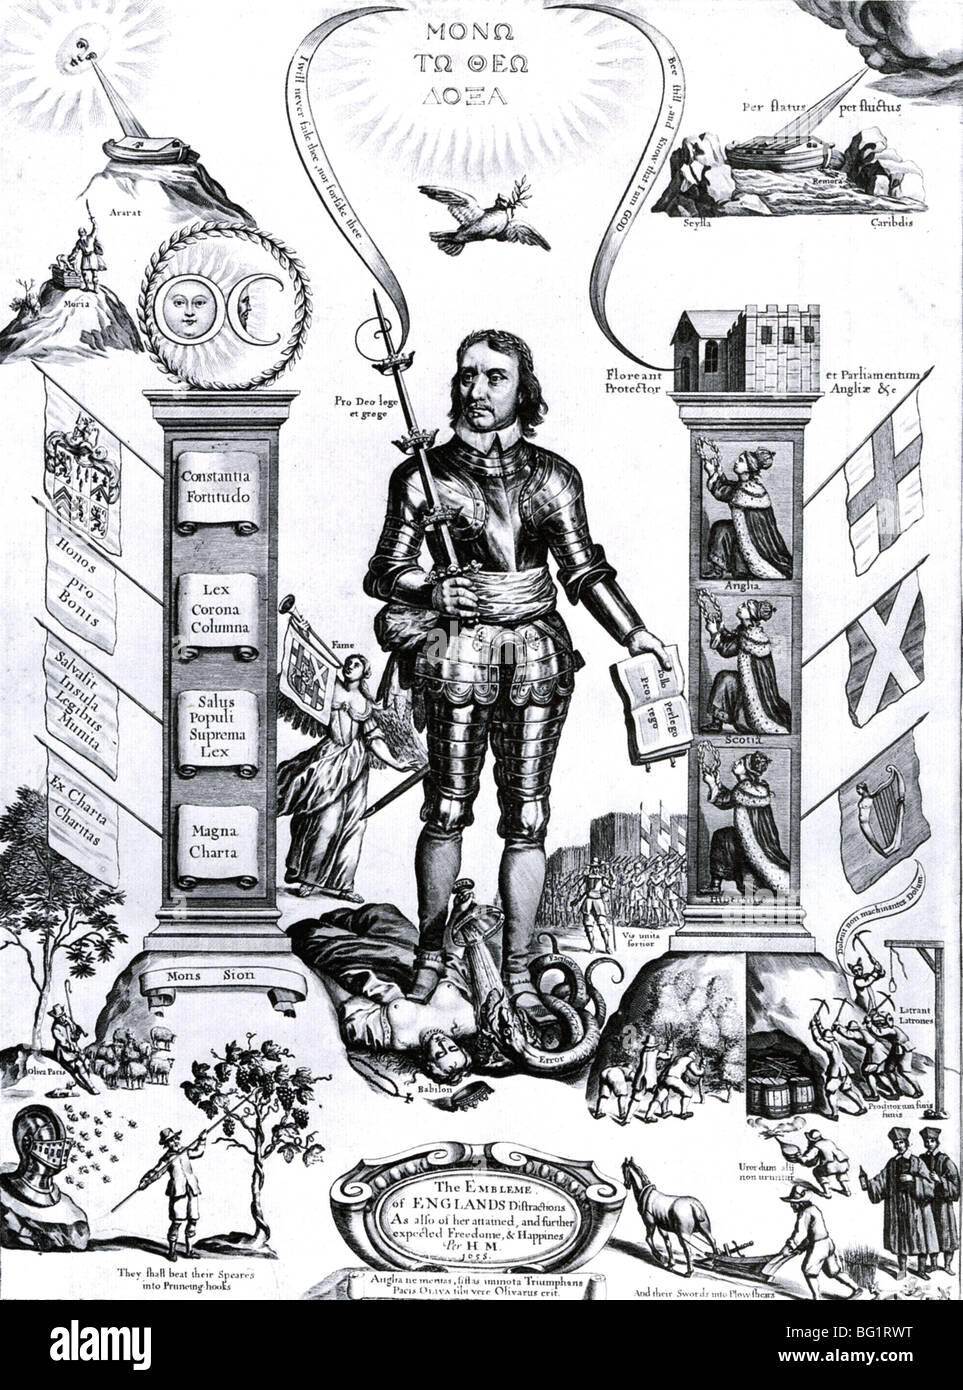 OLIVER CROMWELL soldato inglese e più (1599-1658) come signore Protector Foto Stock